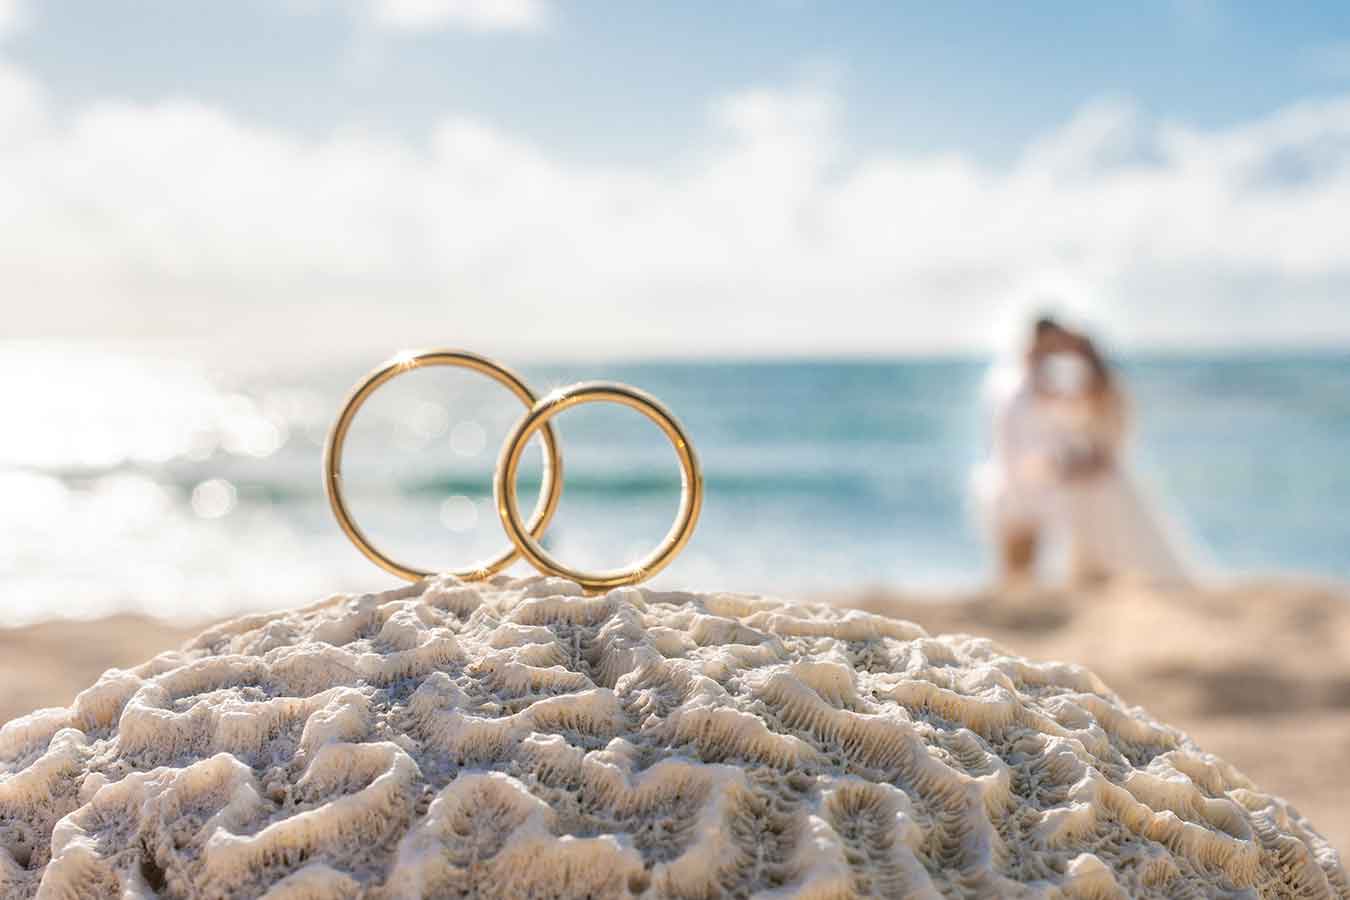 求婚攝影 GoPro 自拍 求婚片 注意事項 求婚攻略